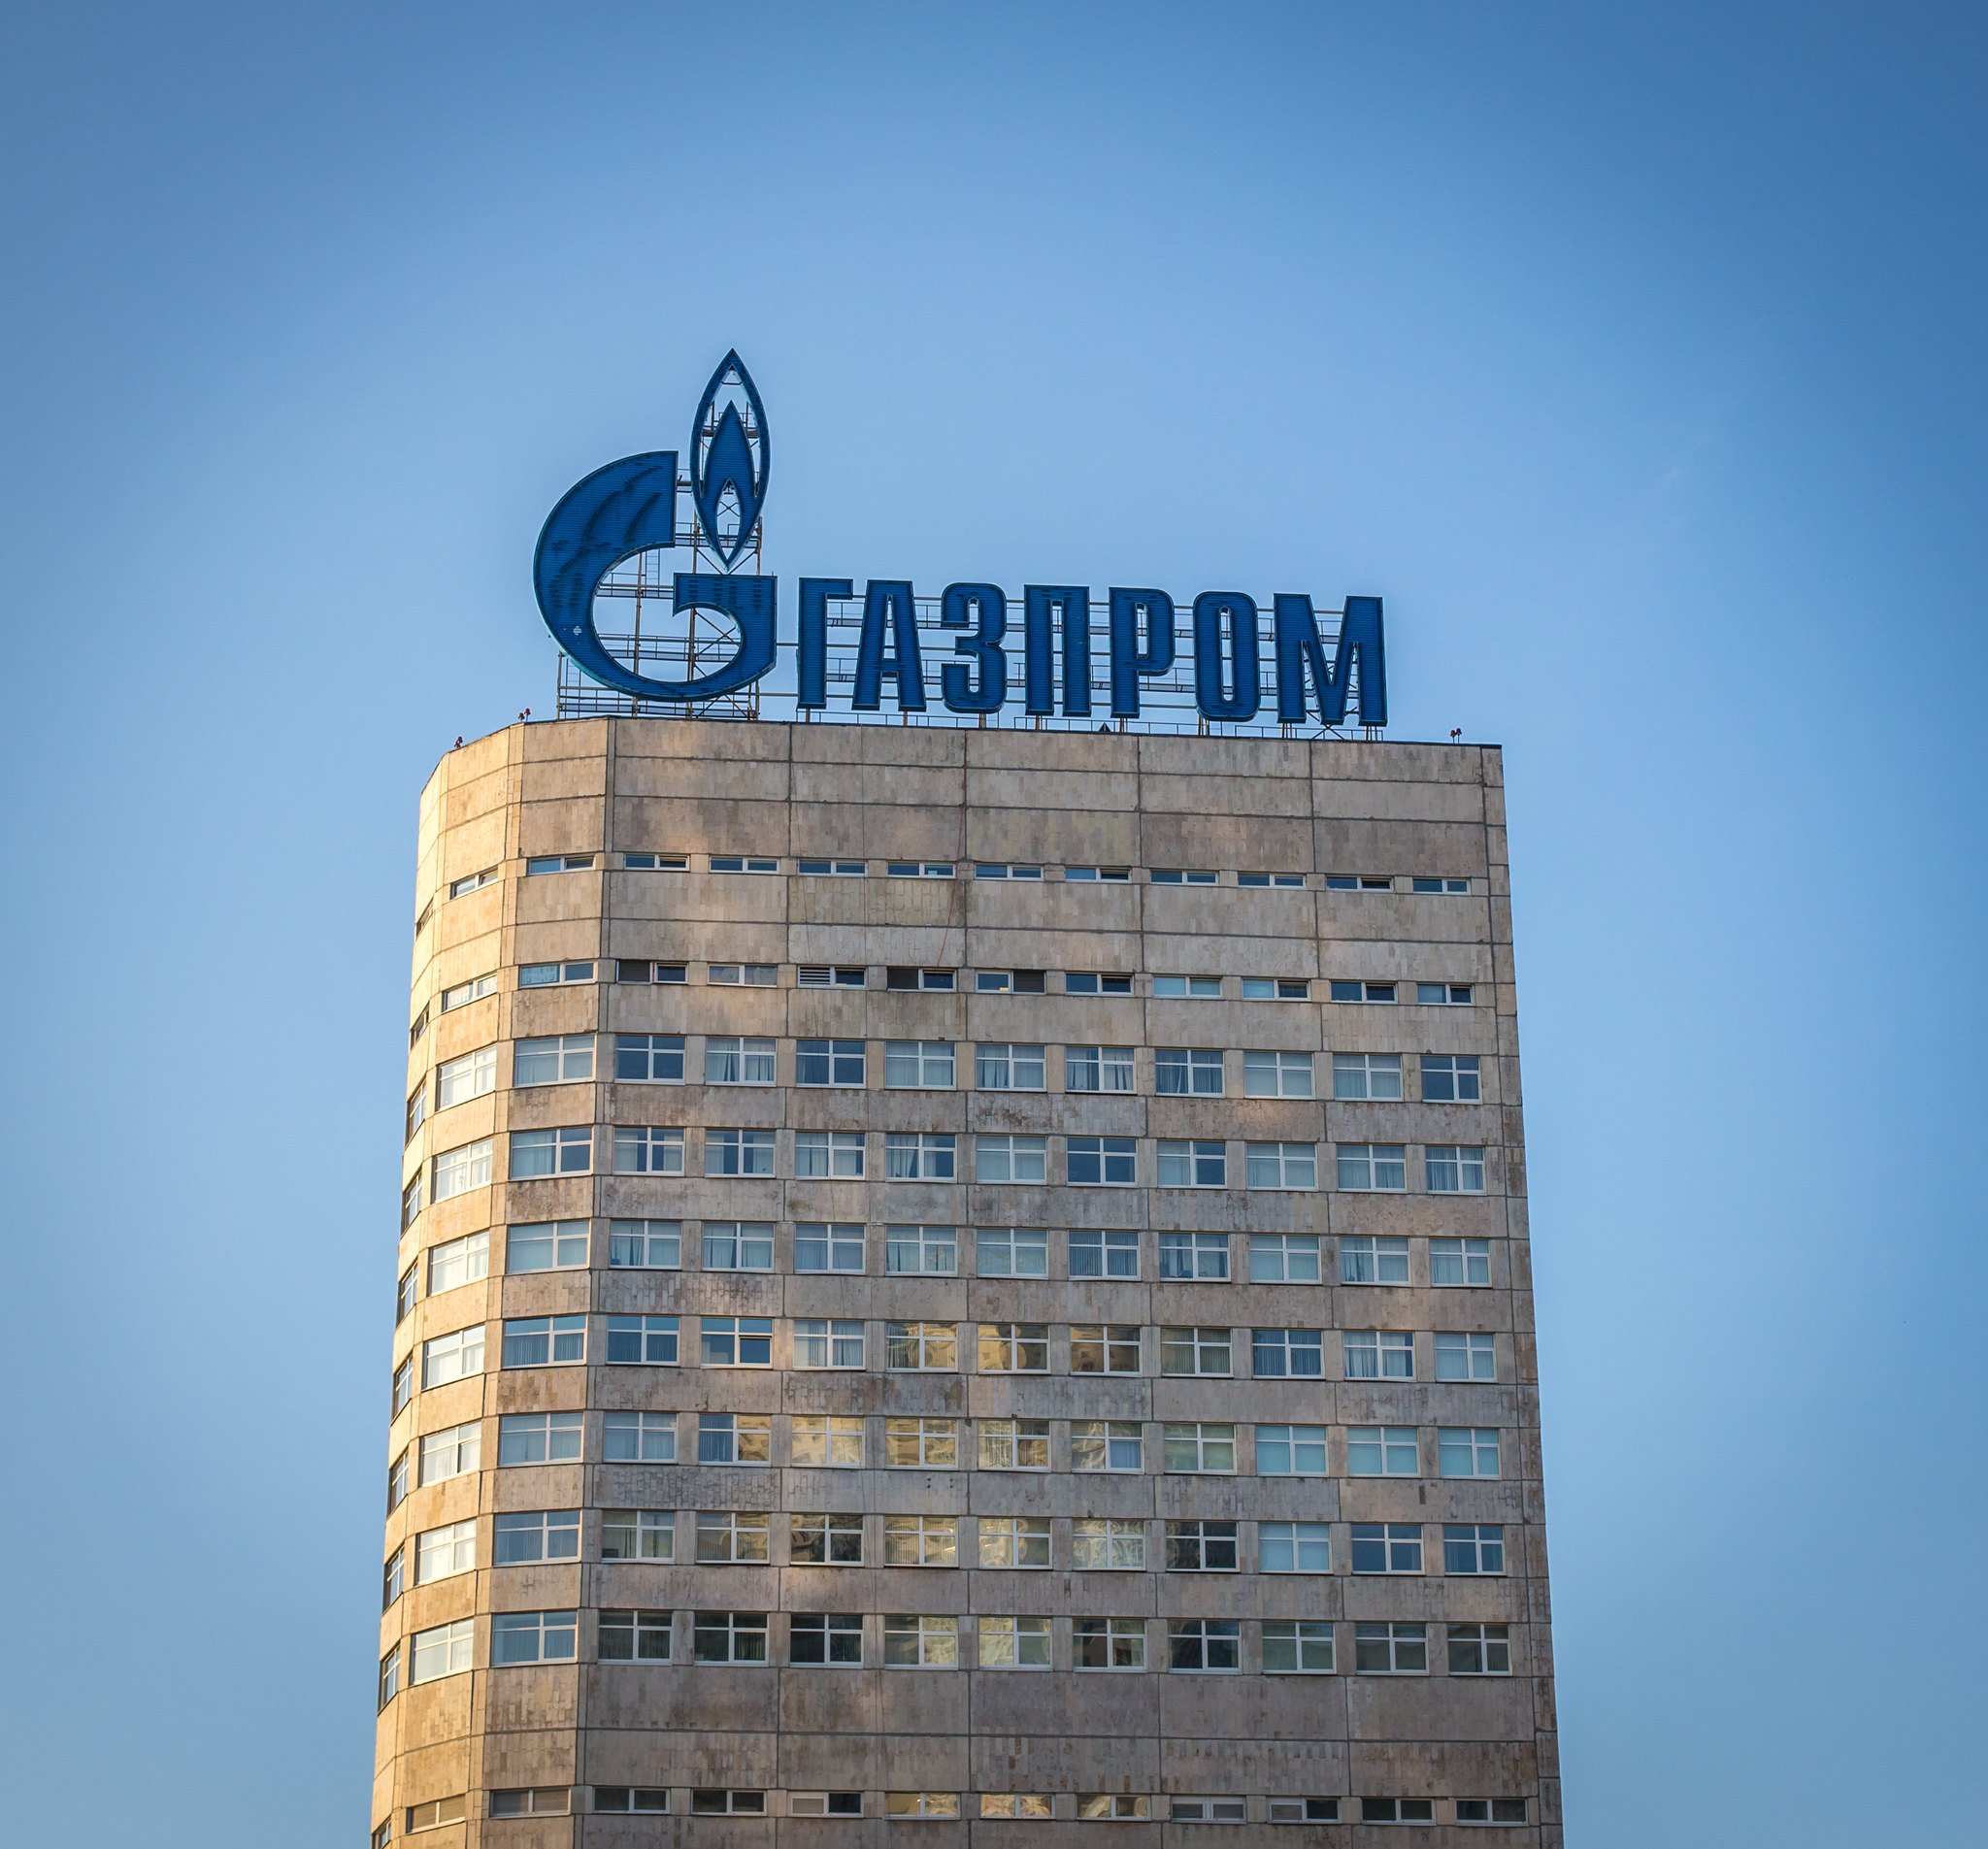 Grazprom inyectará 9.900 millones de euros en el Kremlin tras registrar beneficios récord